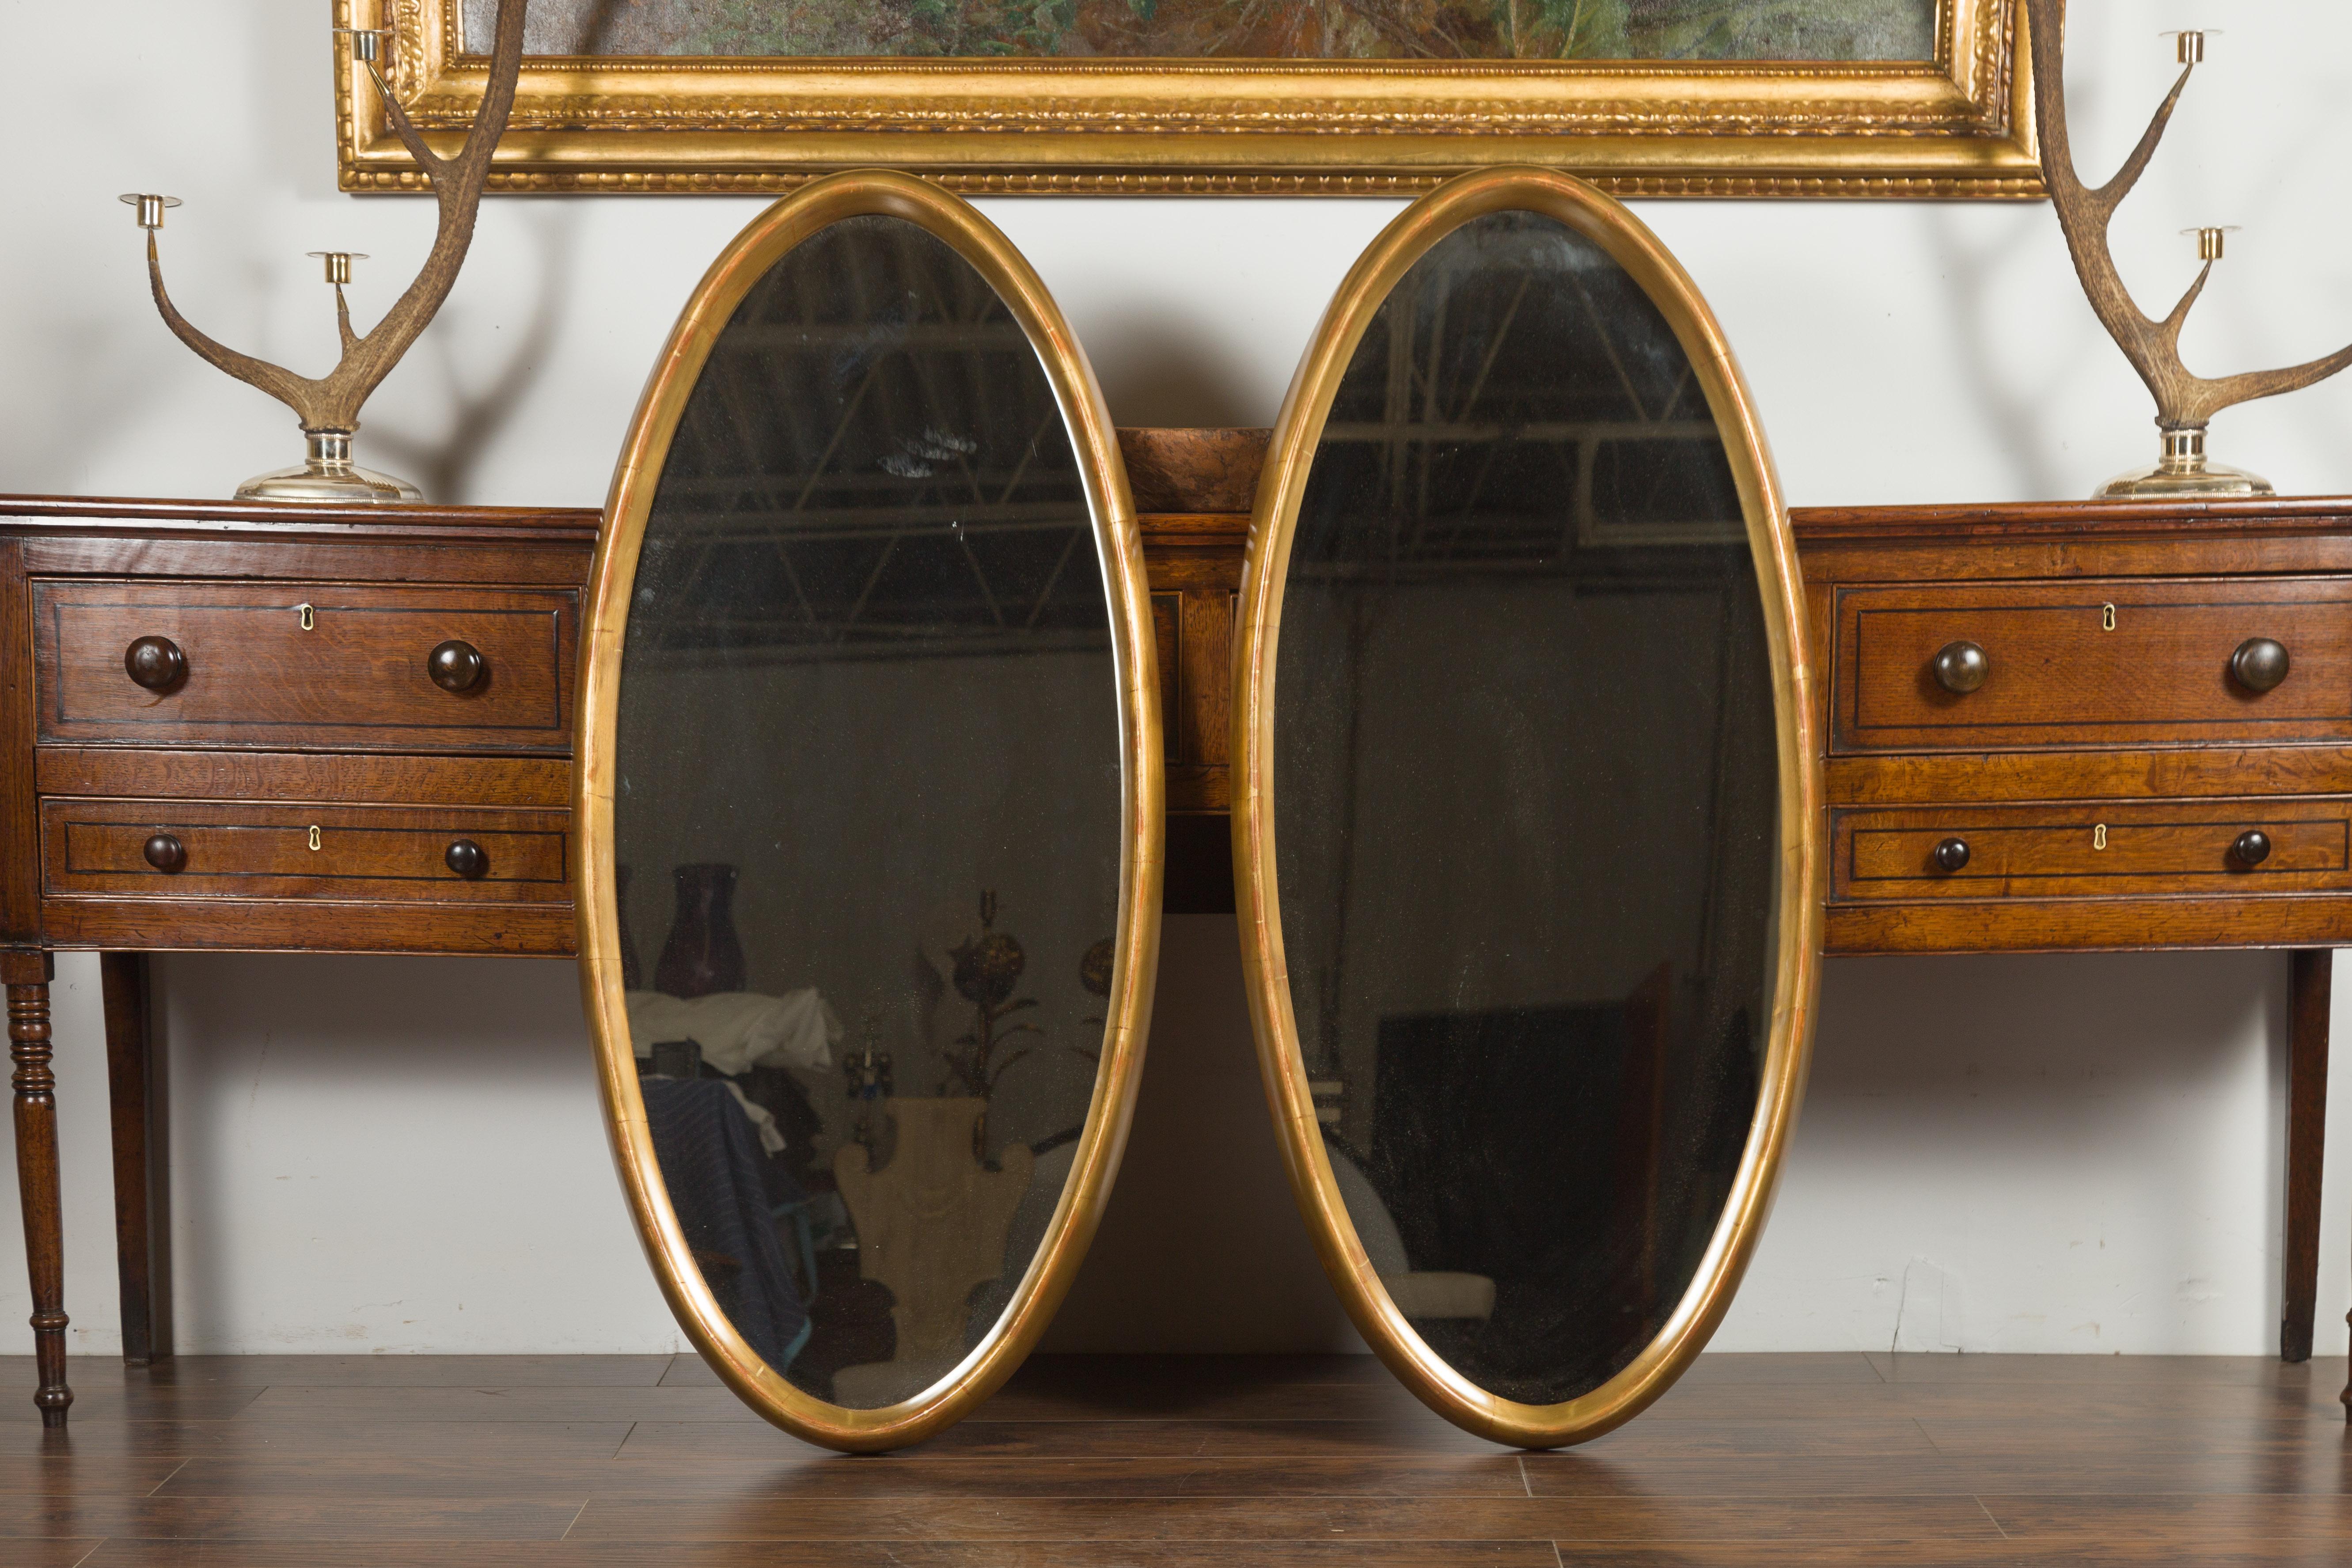 Paire de grands miroirs ovales italiens en bois doré du milieu du 20e siècle. Élégante et simple tout à la fois, cette paire de miroirs ovales en bois doré nous charme par ses lignes épurées et sa silhouette sereine. Cette paire de miroirs italiens